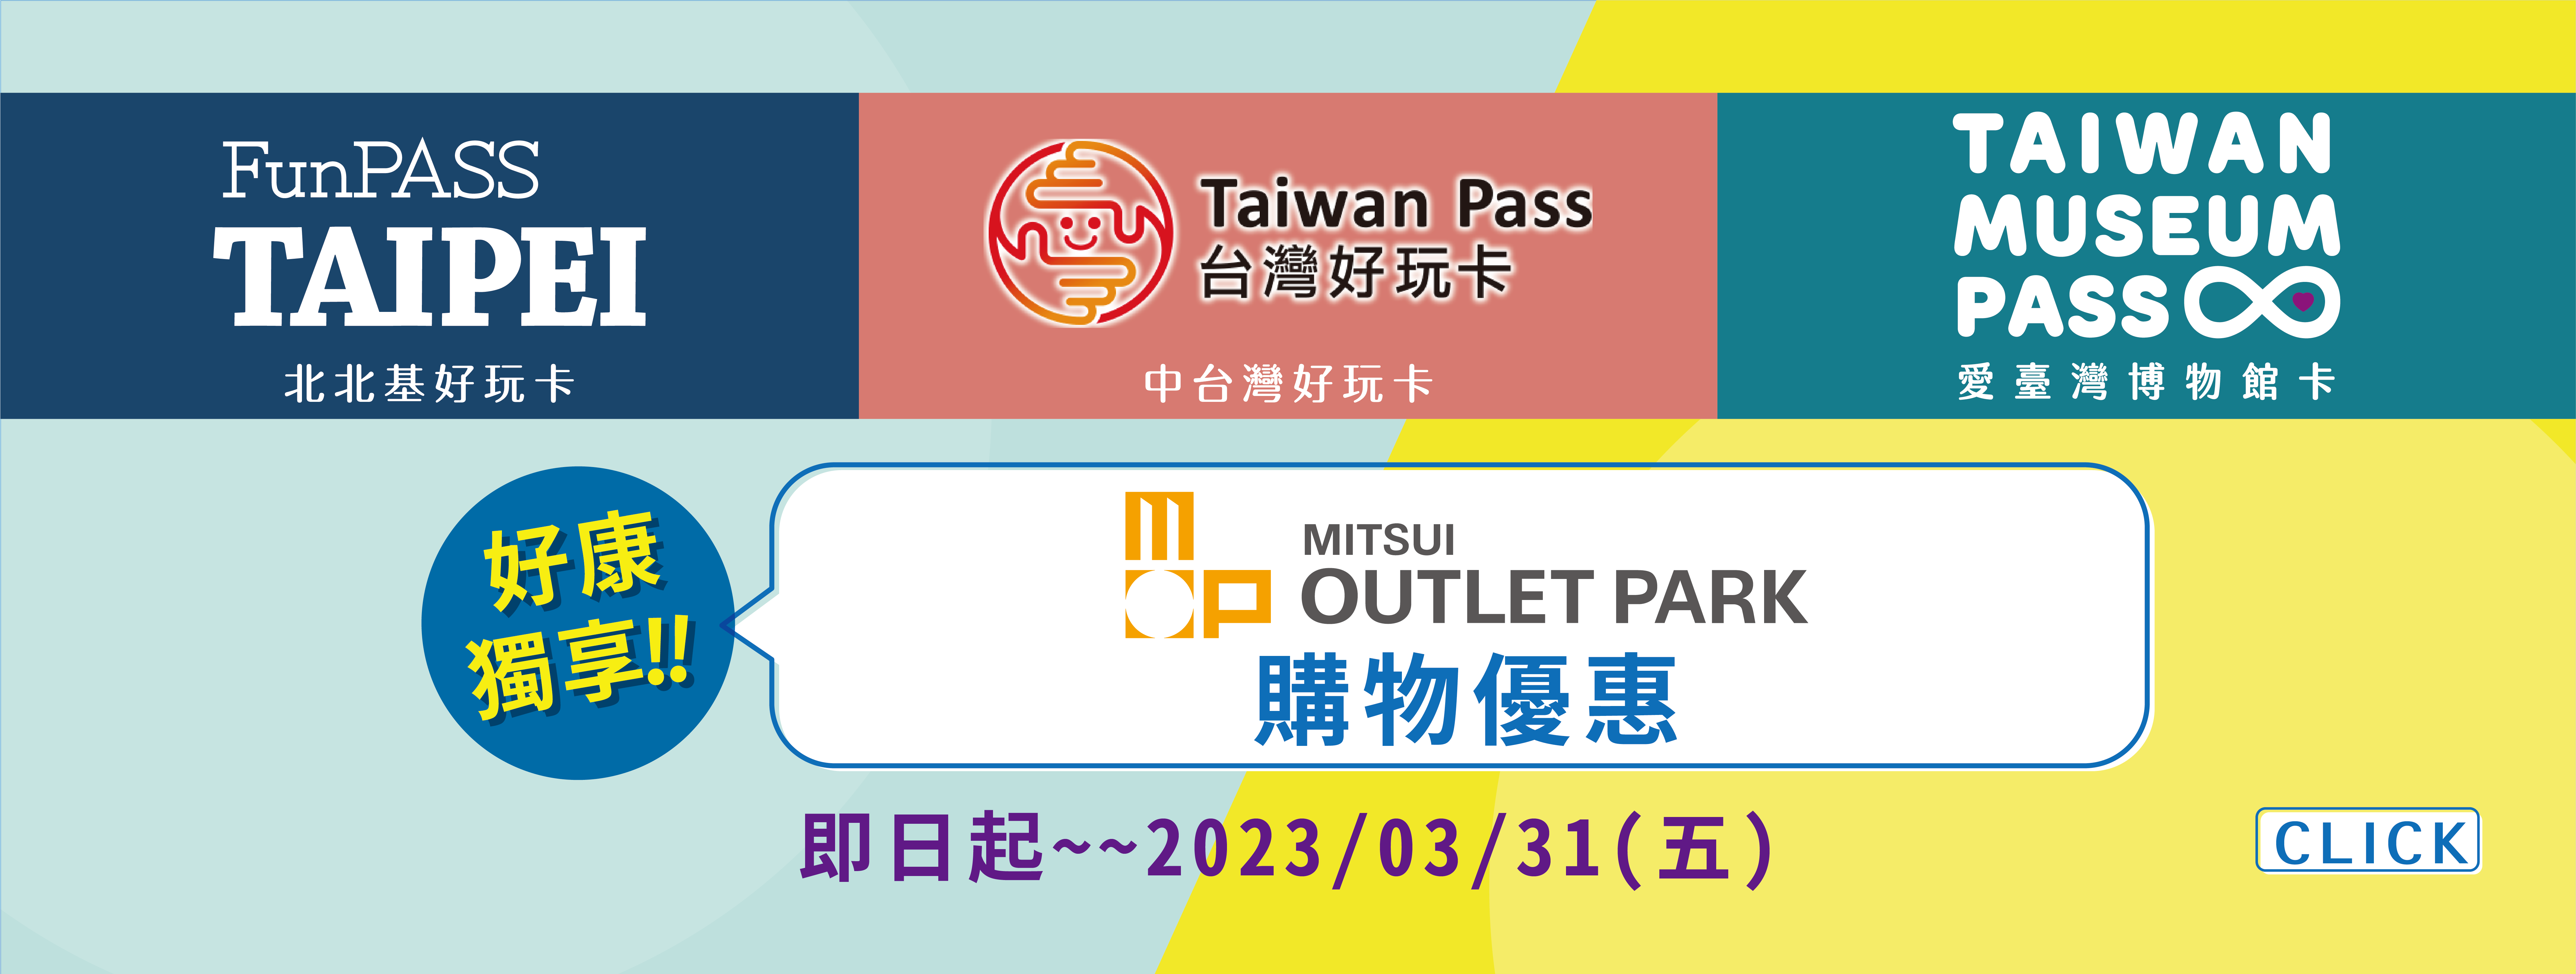 Taiwan Pass 聯合優惠活動